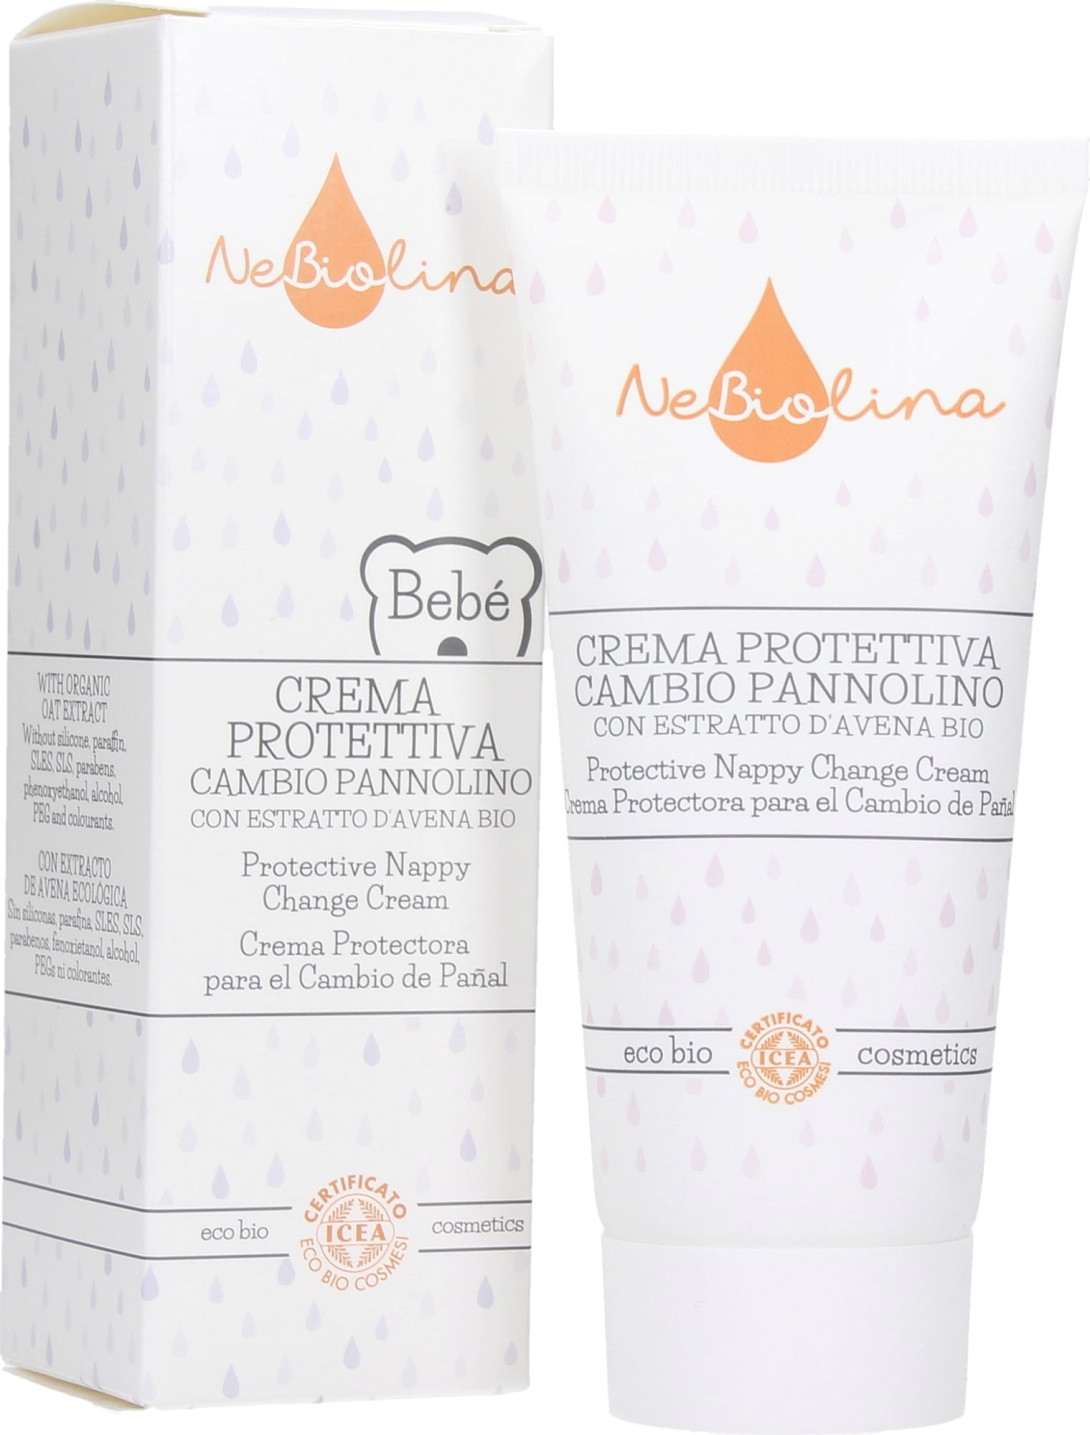 Crema Protettiva Cambio Pannolino - Nebiolina